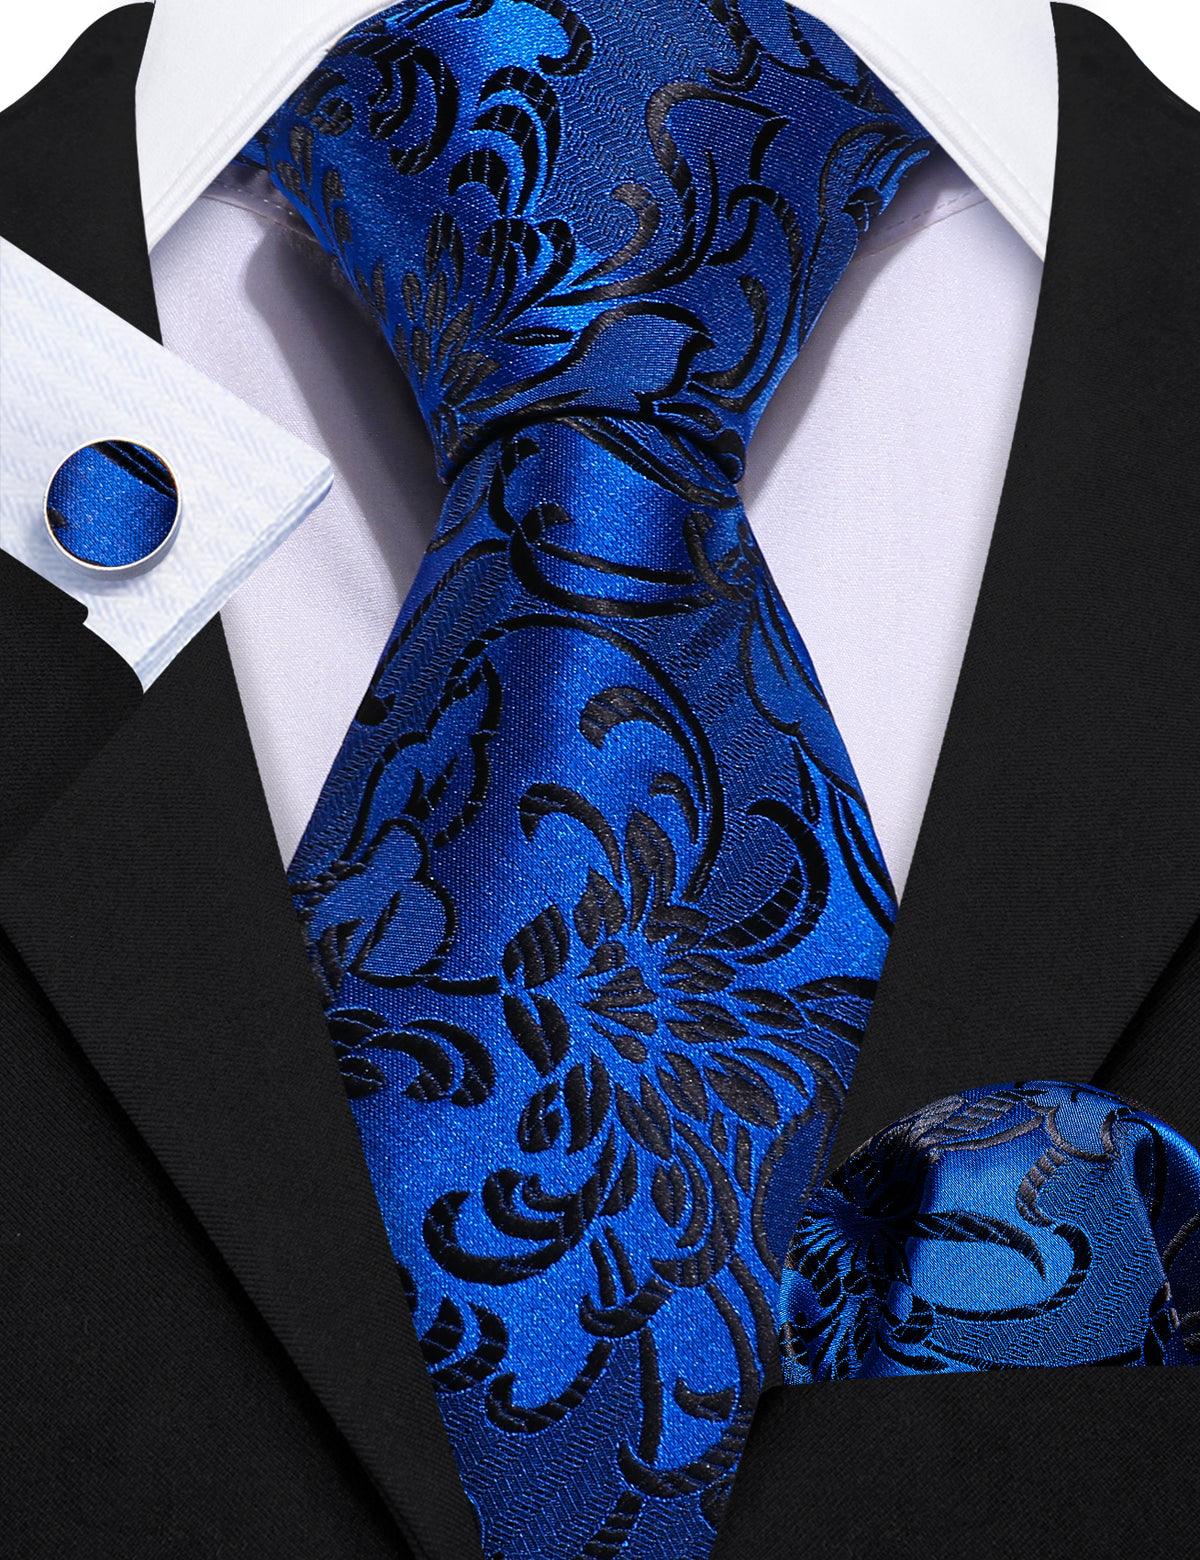 Sapphire Blue Floral Silk Tie Pocket Square Cufflink Set - STYLETIE